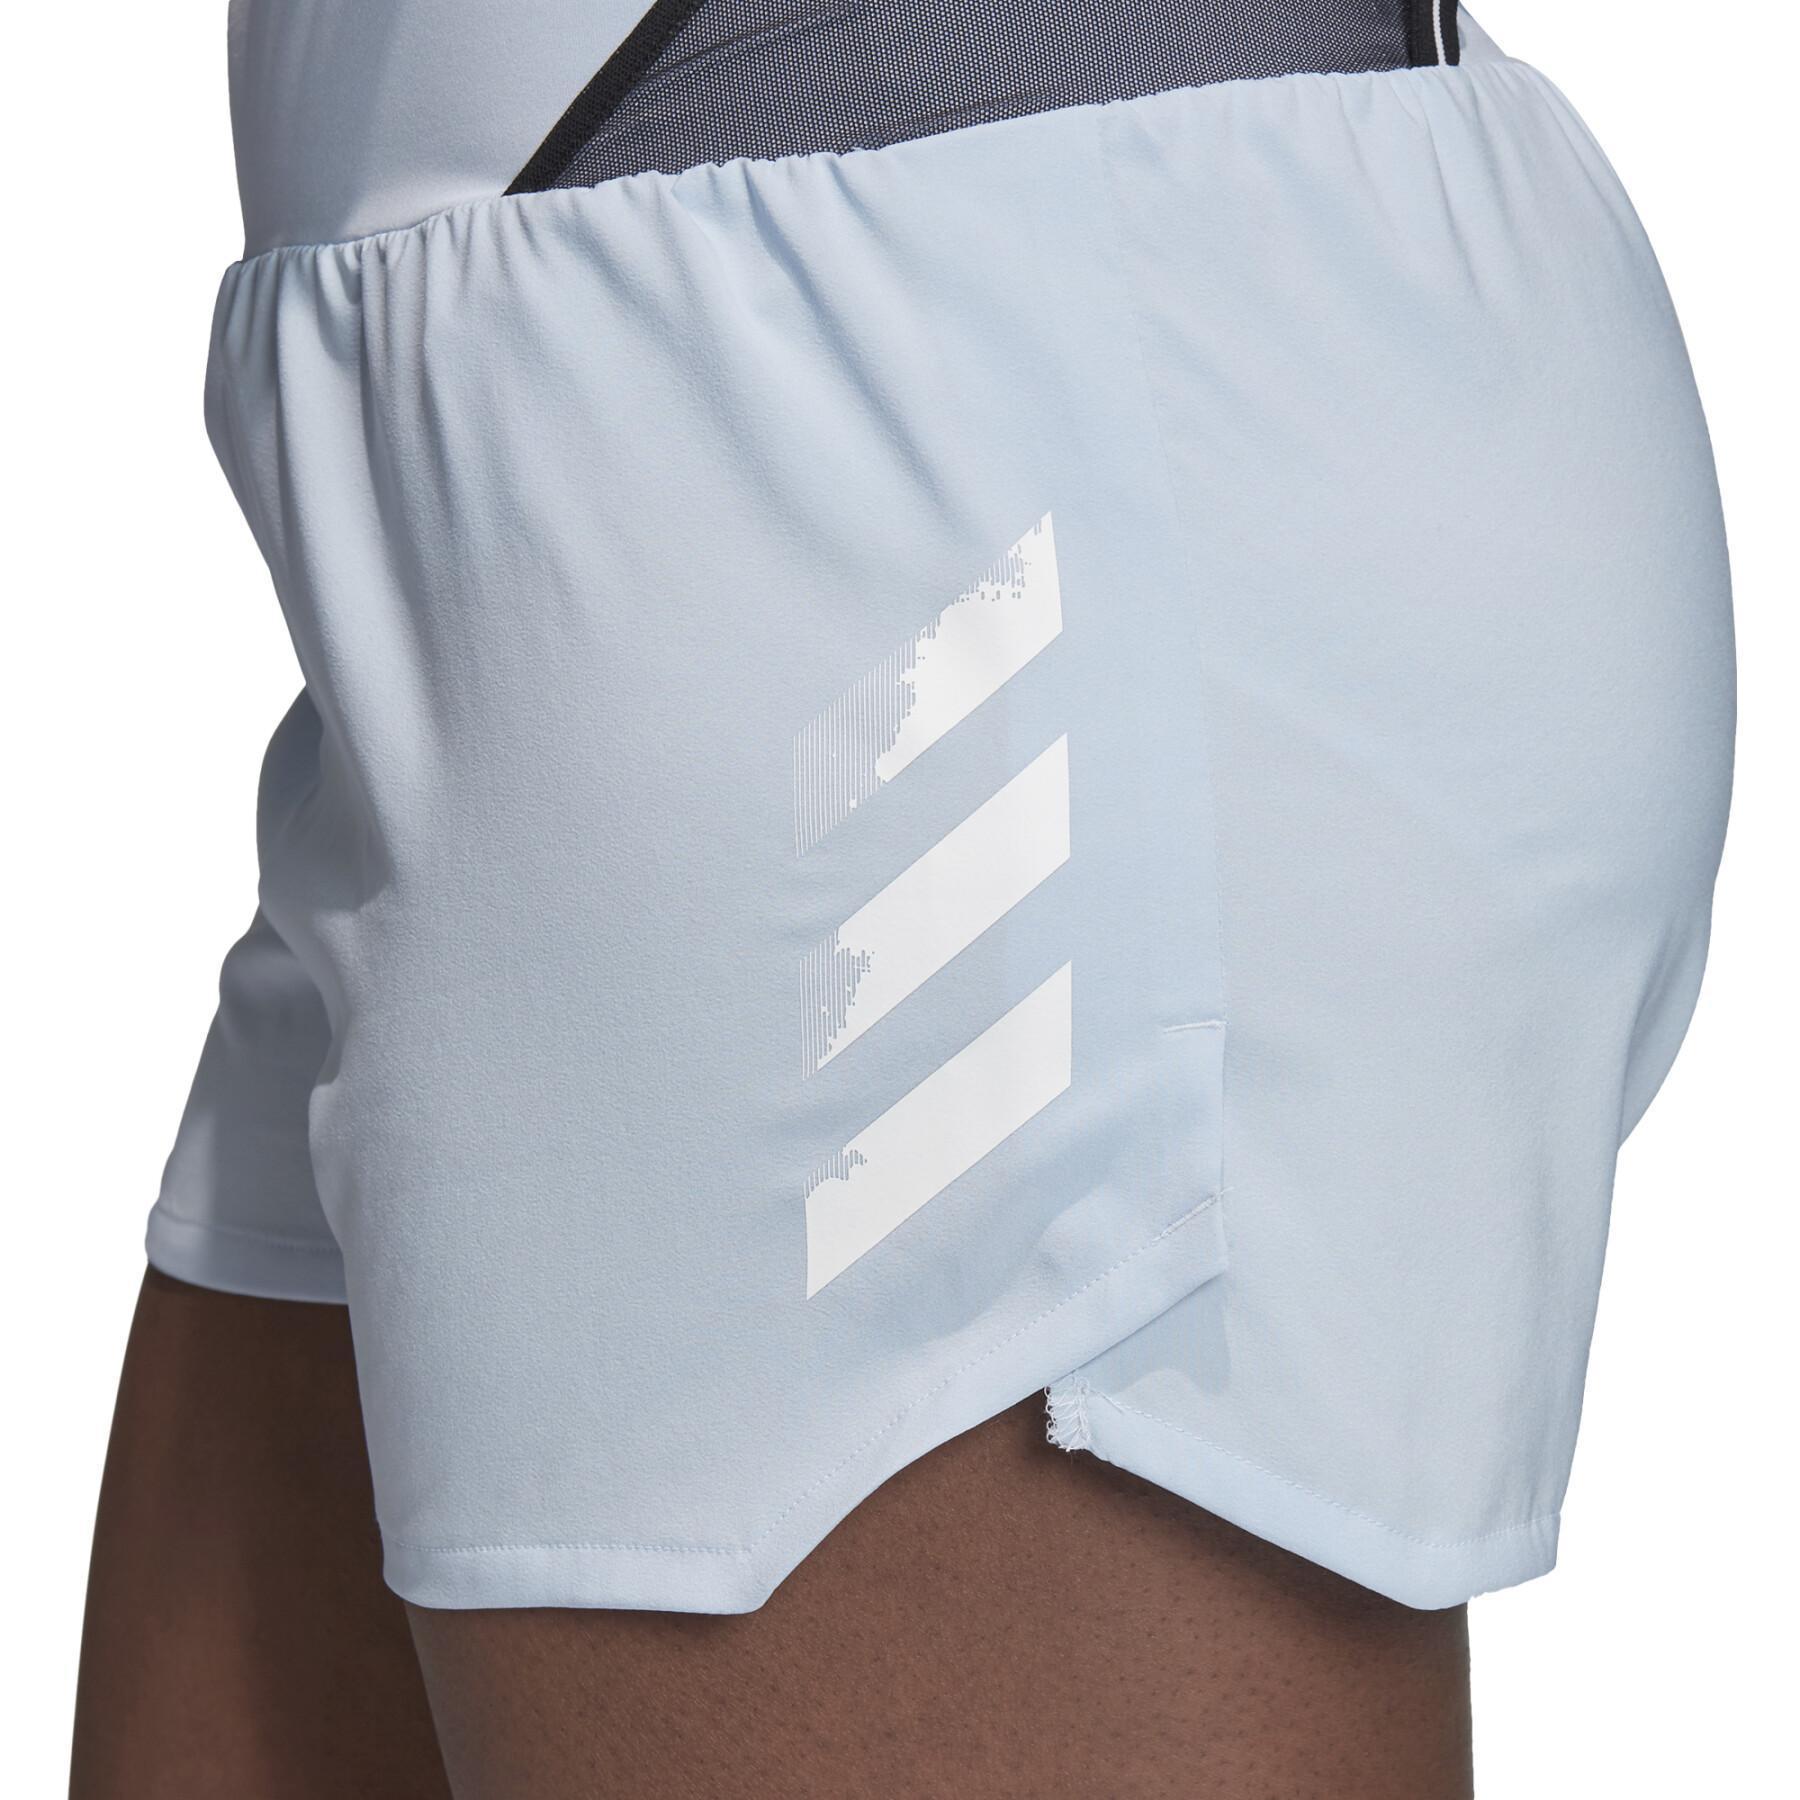 Damen-Shorts adidas Terrex Agravic All-Around